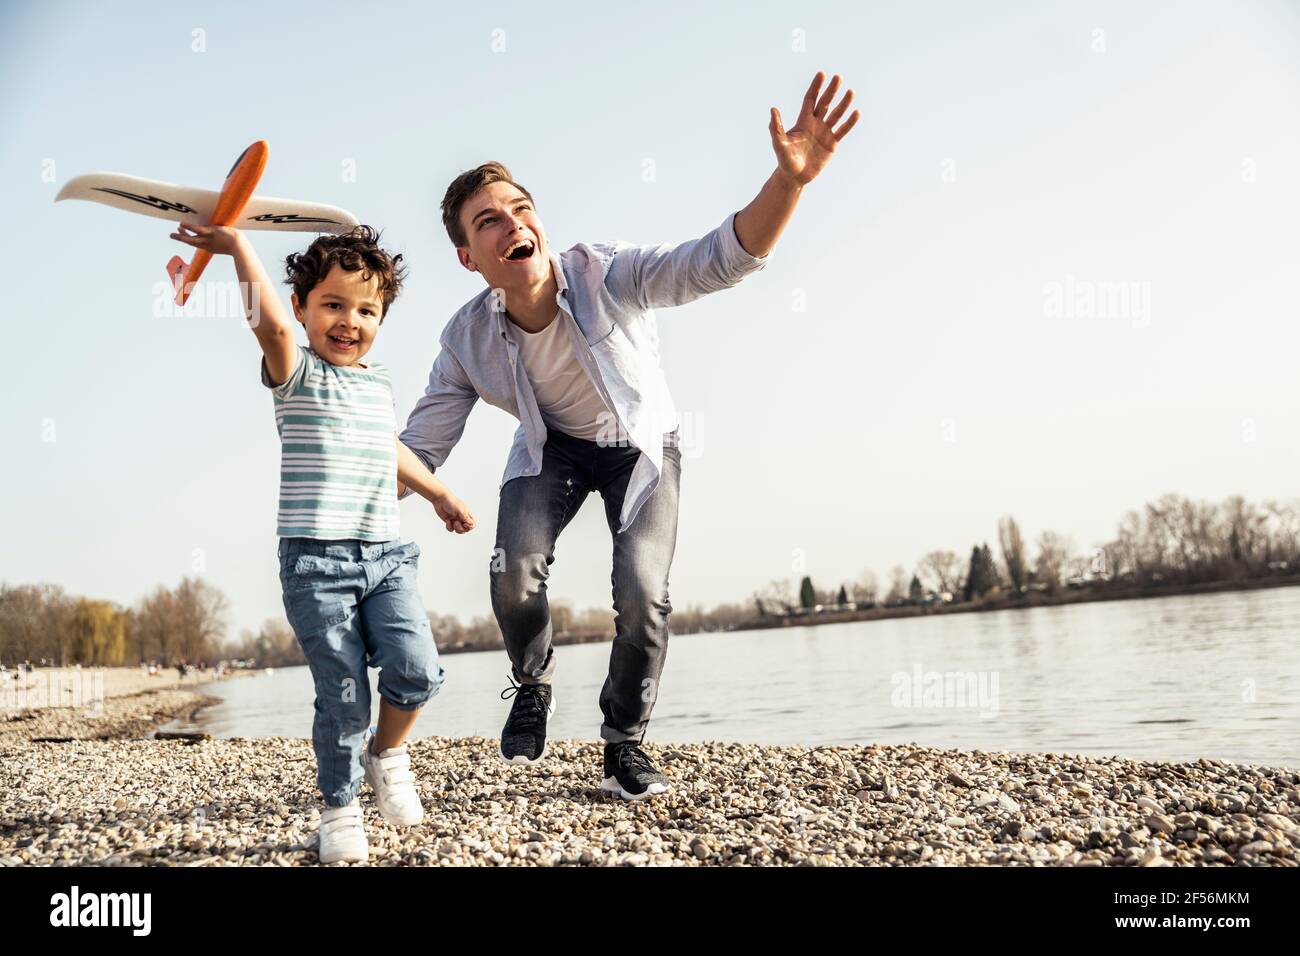 Un homme et un garçon joueurs tenant un jouet d'avion tout en courant lakeshore le jour ensoleillé Banque D'Images